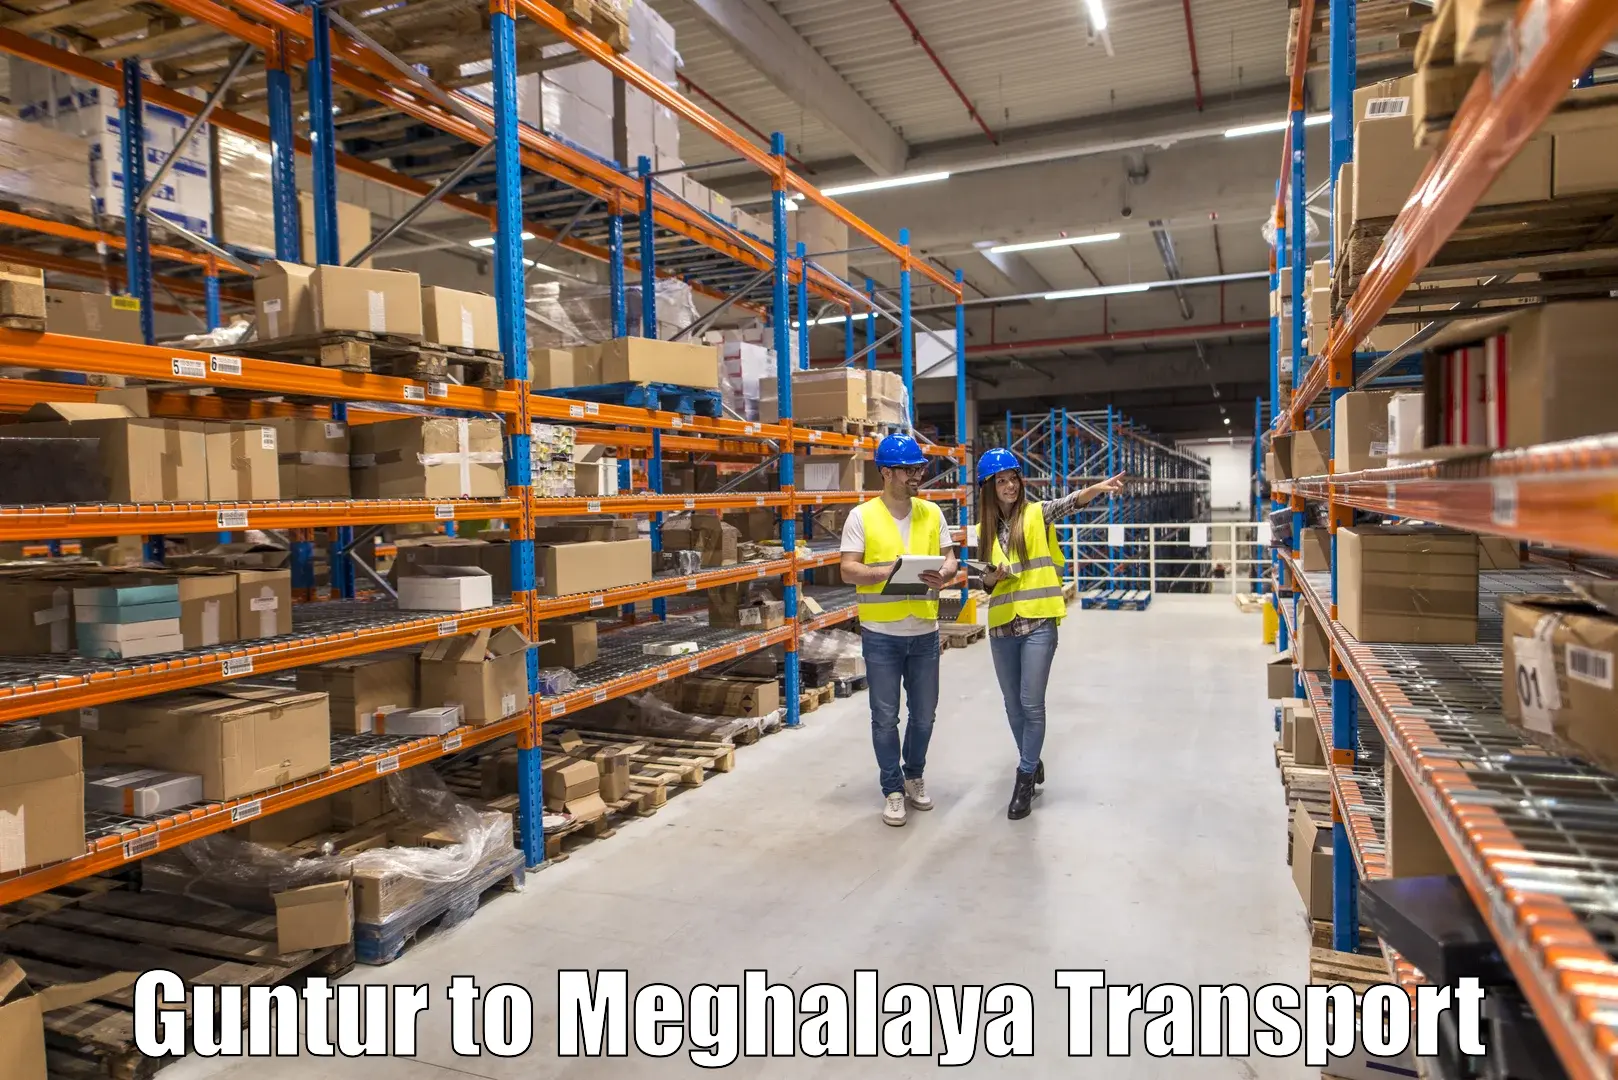 Container transport service Guntur to Williamnagar